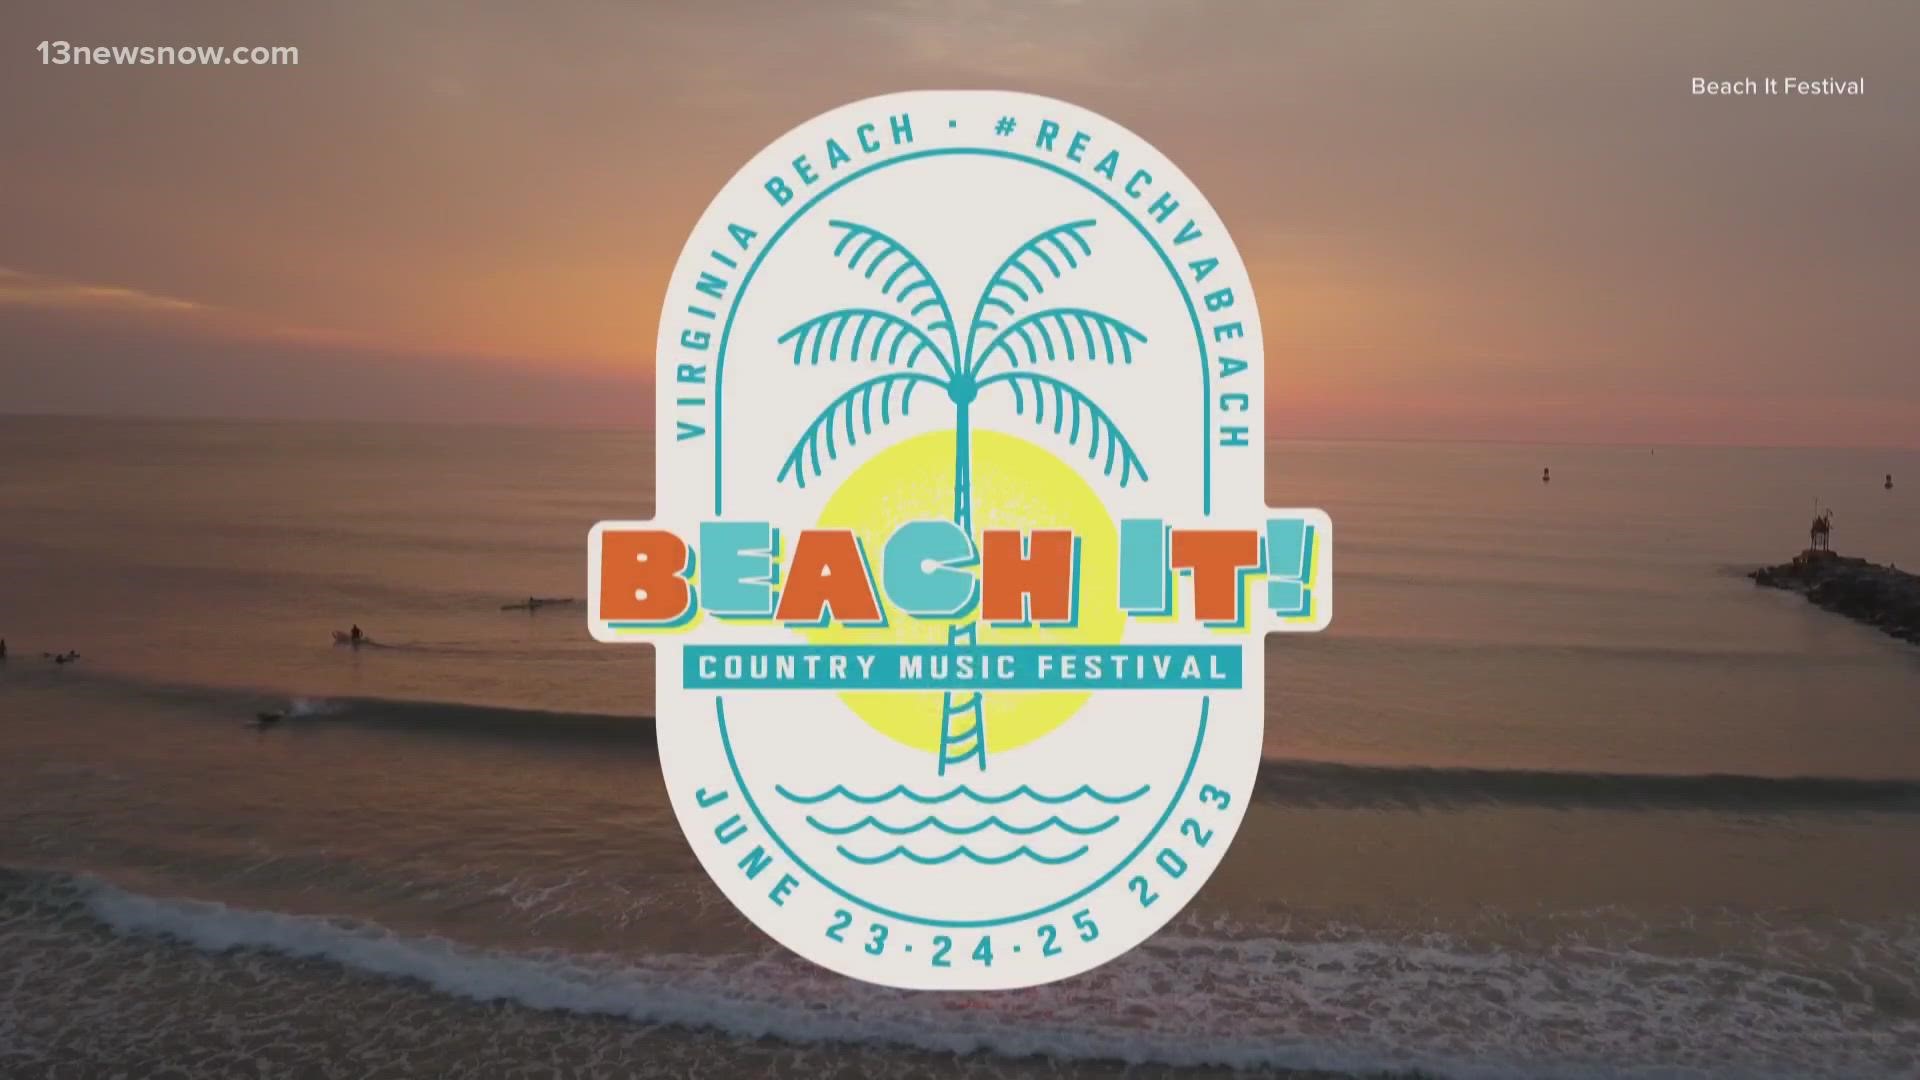 Luke Bryan, Miranda Lambert and Thomas Rhett will be the primary headliners for the inaugural "Beach It!" festival.